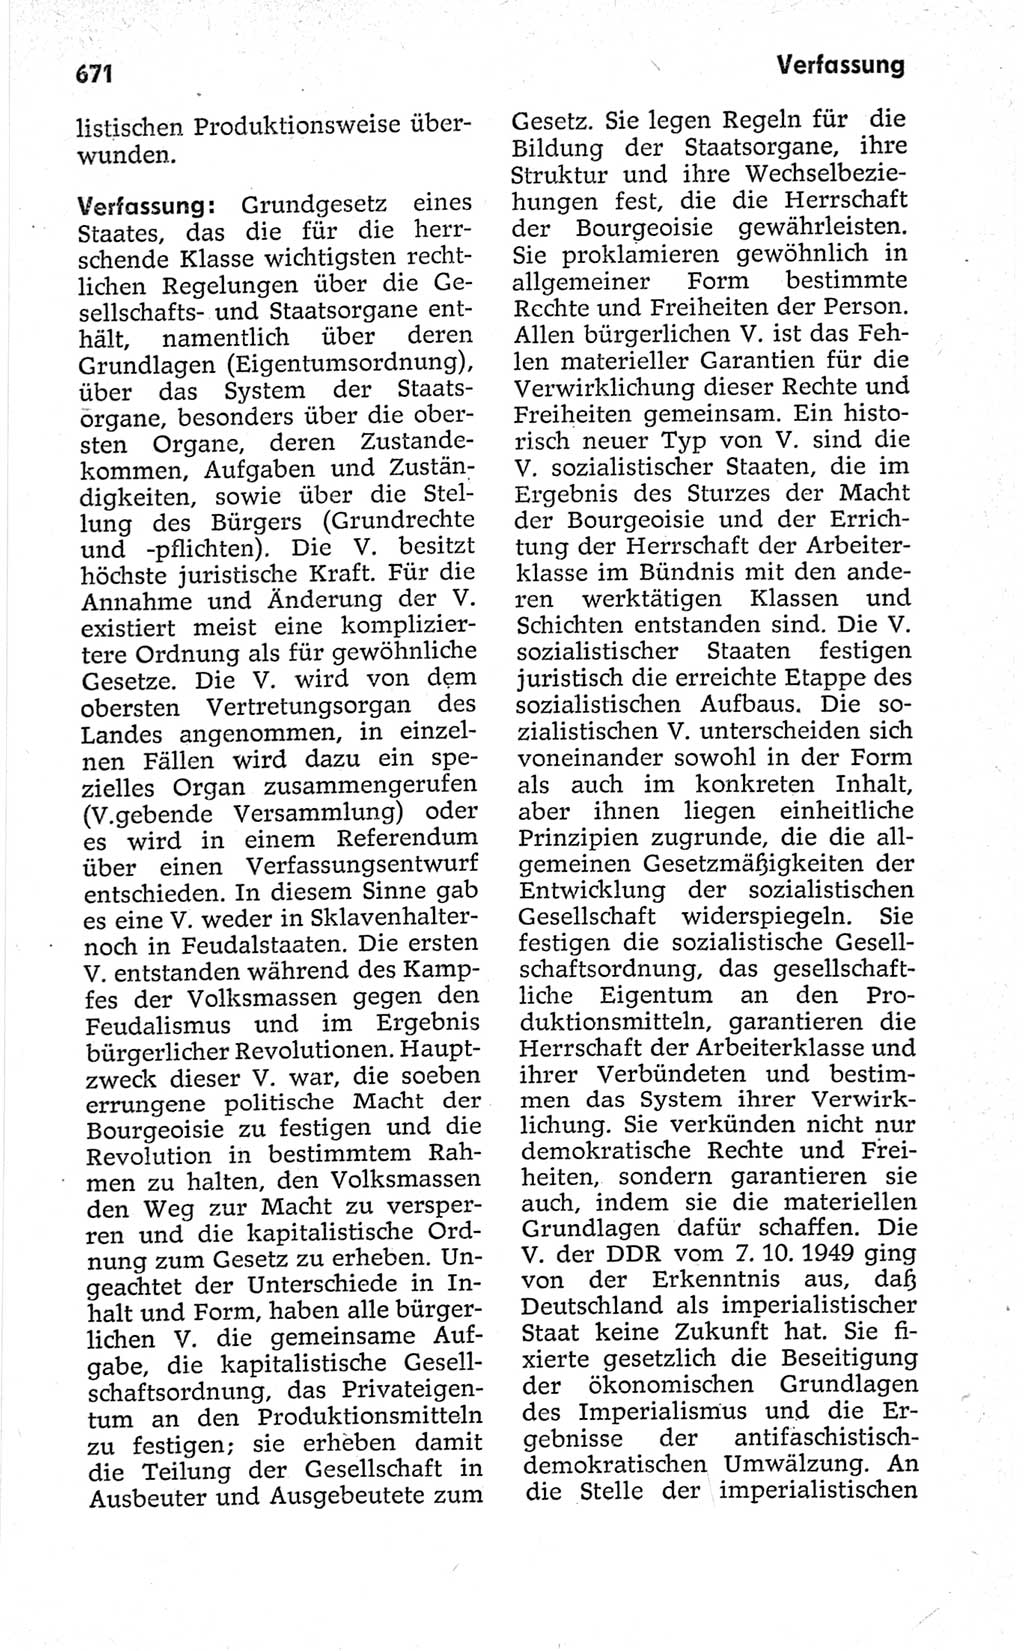 Kleines politisches Wörterbuch [Deutsche Demokratische Republik (DDR)] 1967, Seite 671 (Kl. pol. Wb. DDR 1967, S. 671)